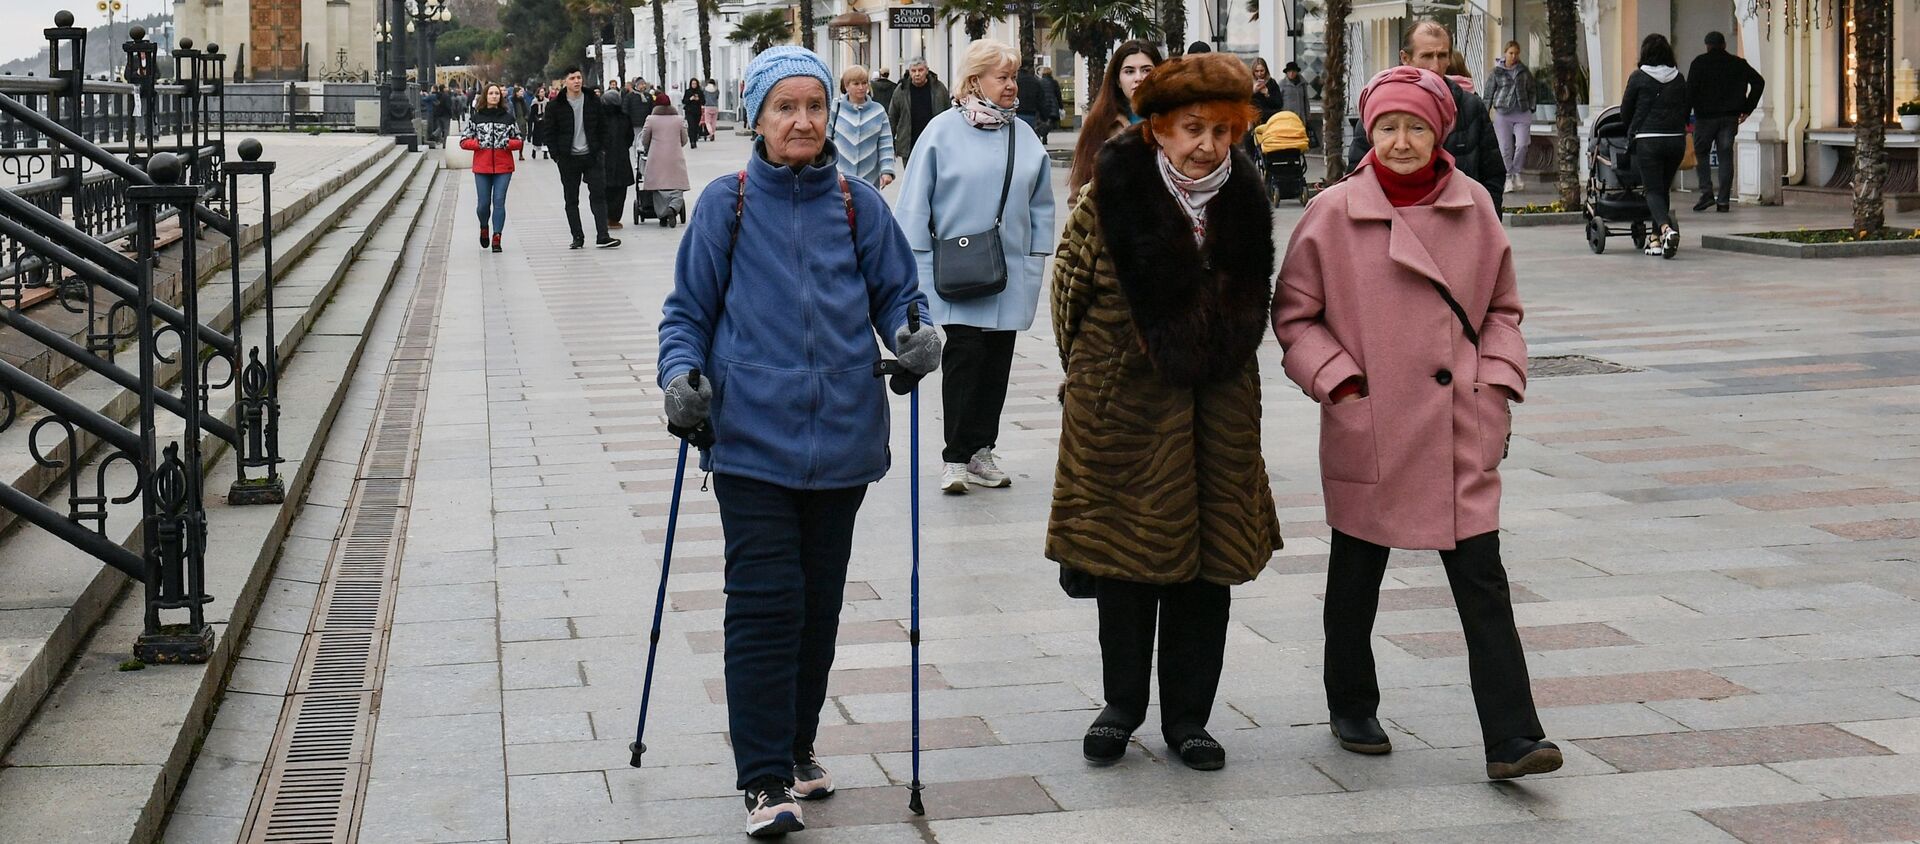 Varios peatones pasean por las calles de Yalta, en Crimea, Rusia, febrero de 2021 - Sputnik Mundo, 1920, 05.02.2021